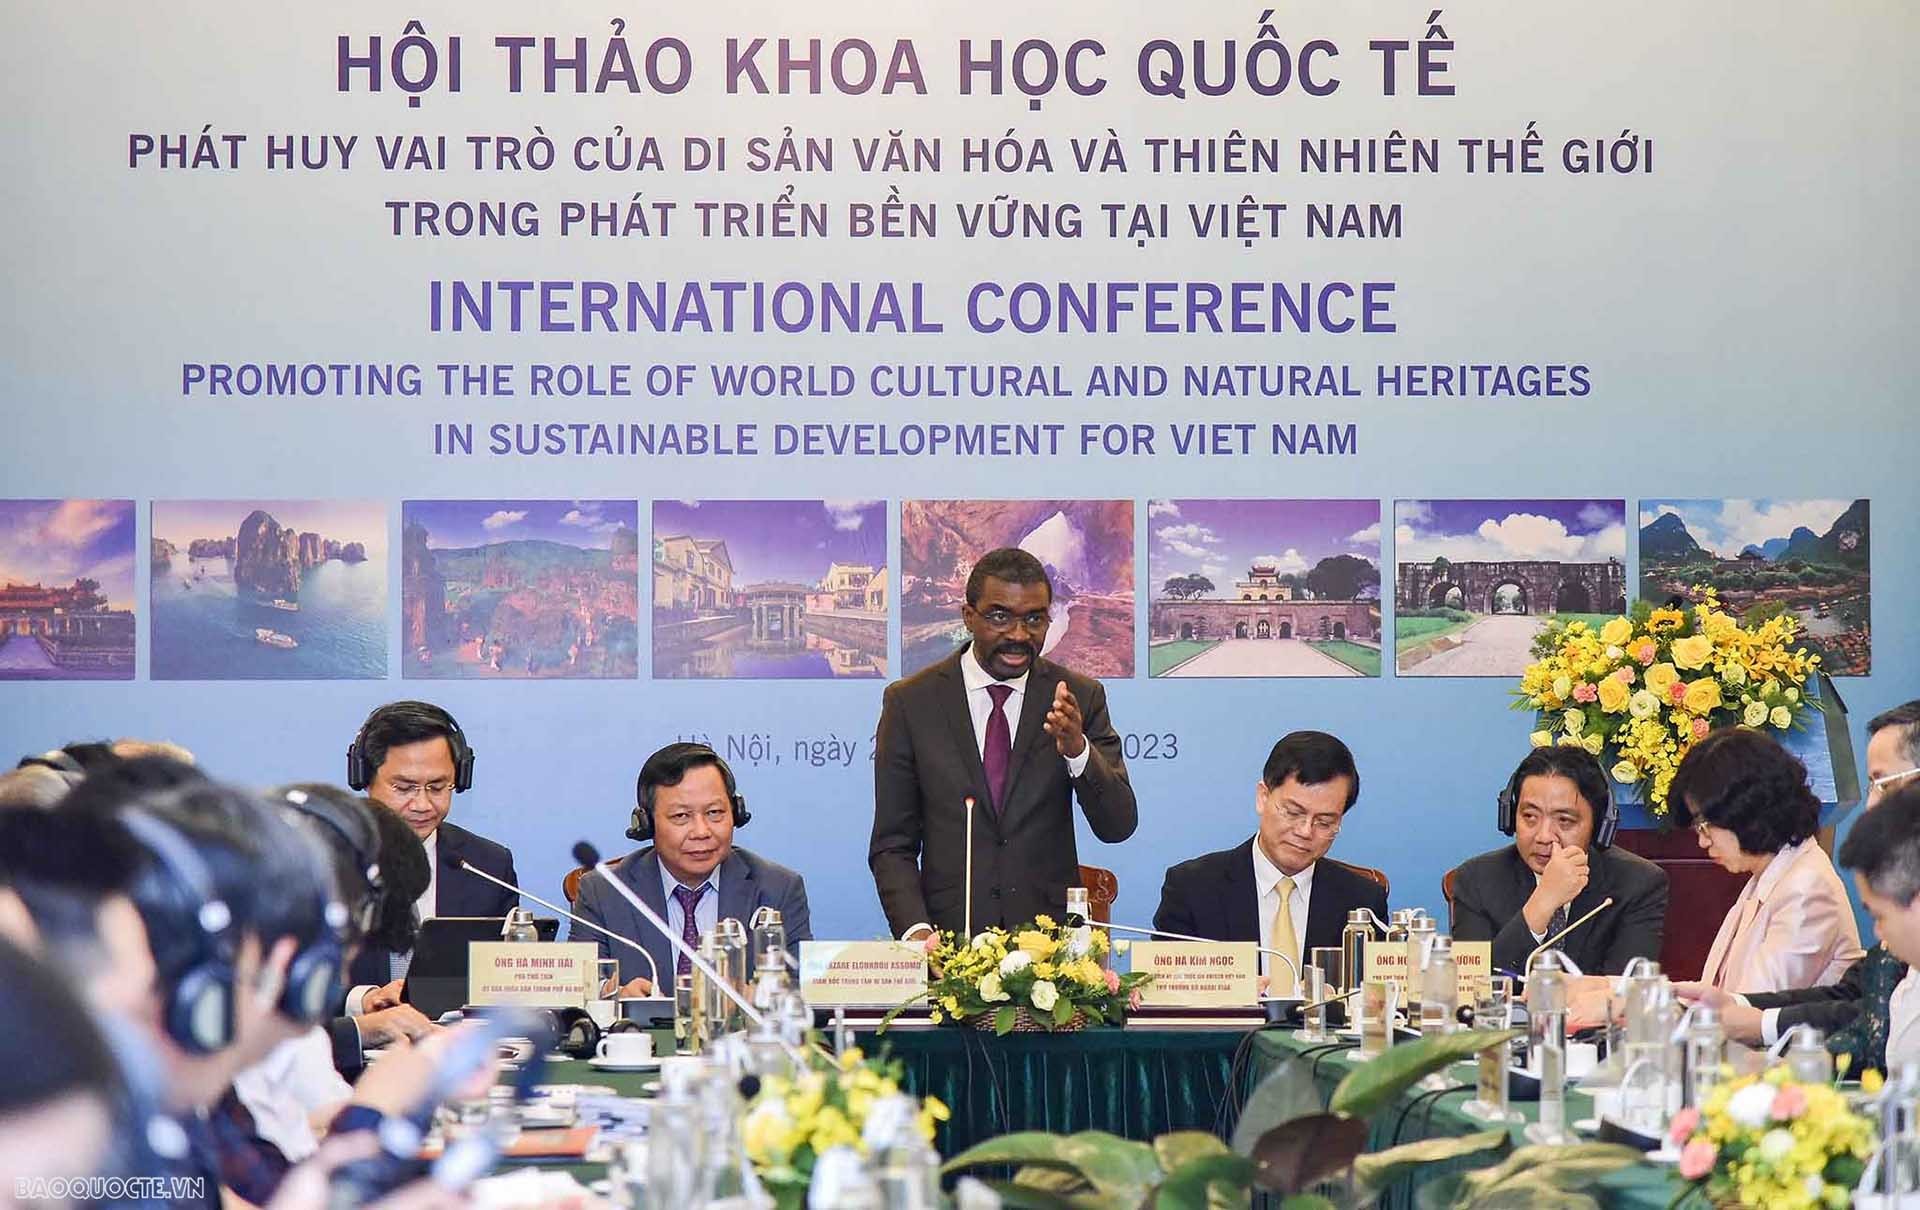 Giám đốc Trung tâm Di sản thế giới UNESCO Lazare Eloundou Assomo phát biểu tại Hội thảo quốc tế  “Phát huy vai trò của Di sản văn hóa và thiên nhiên thế giới trong phát triển bền vững tại Việt Nam” ngày 24/3.  (Ảnh: Nguyễn Hồng)